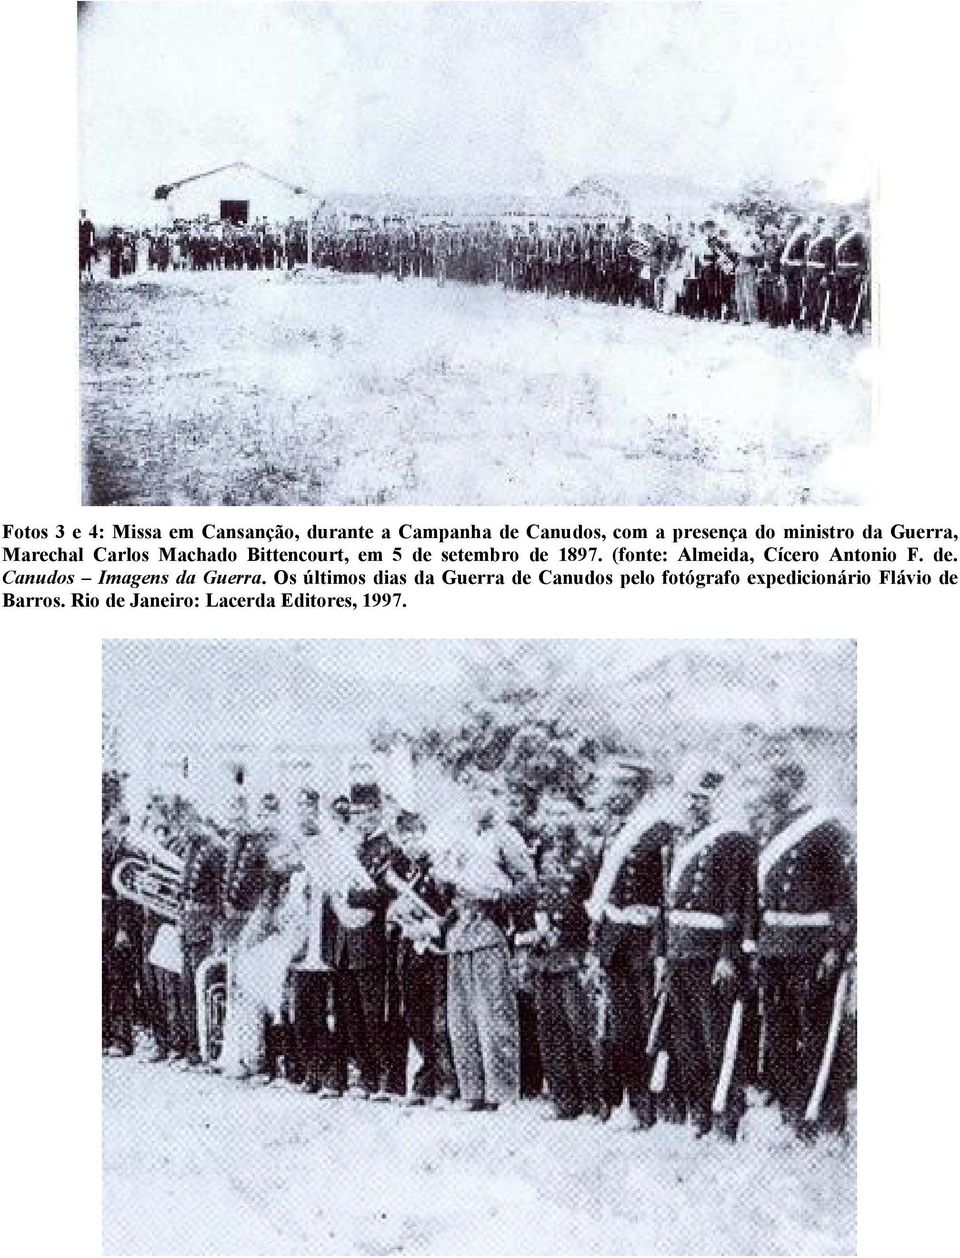 (fonte: Almeida, Cícero Antonio F. de. Canudos Imagens da Guerra.